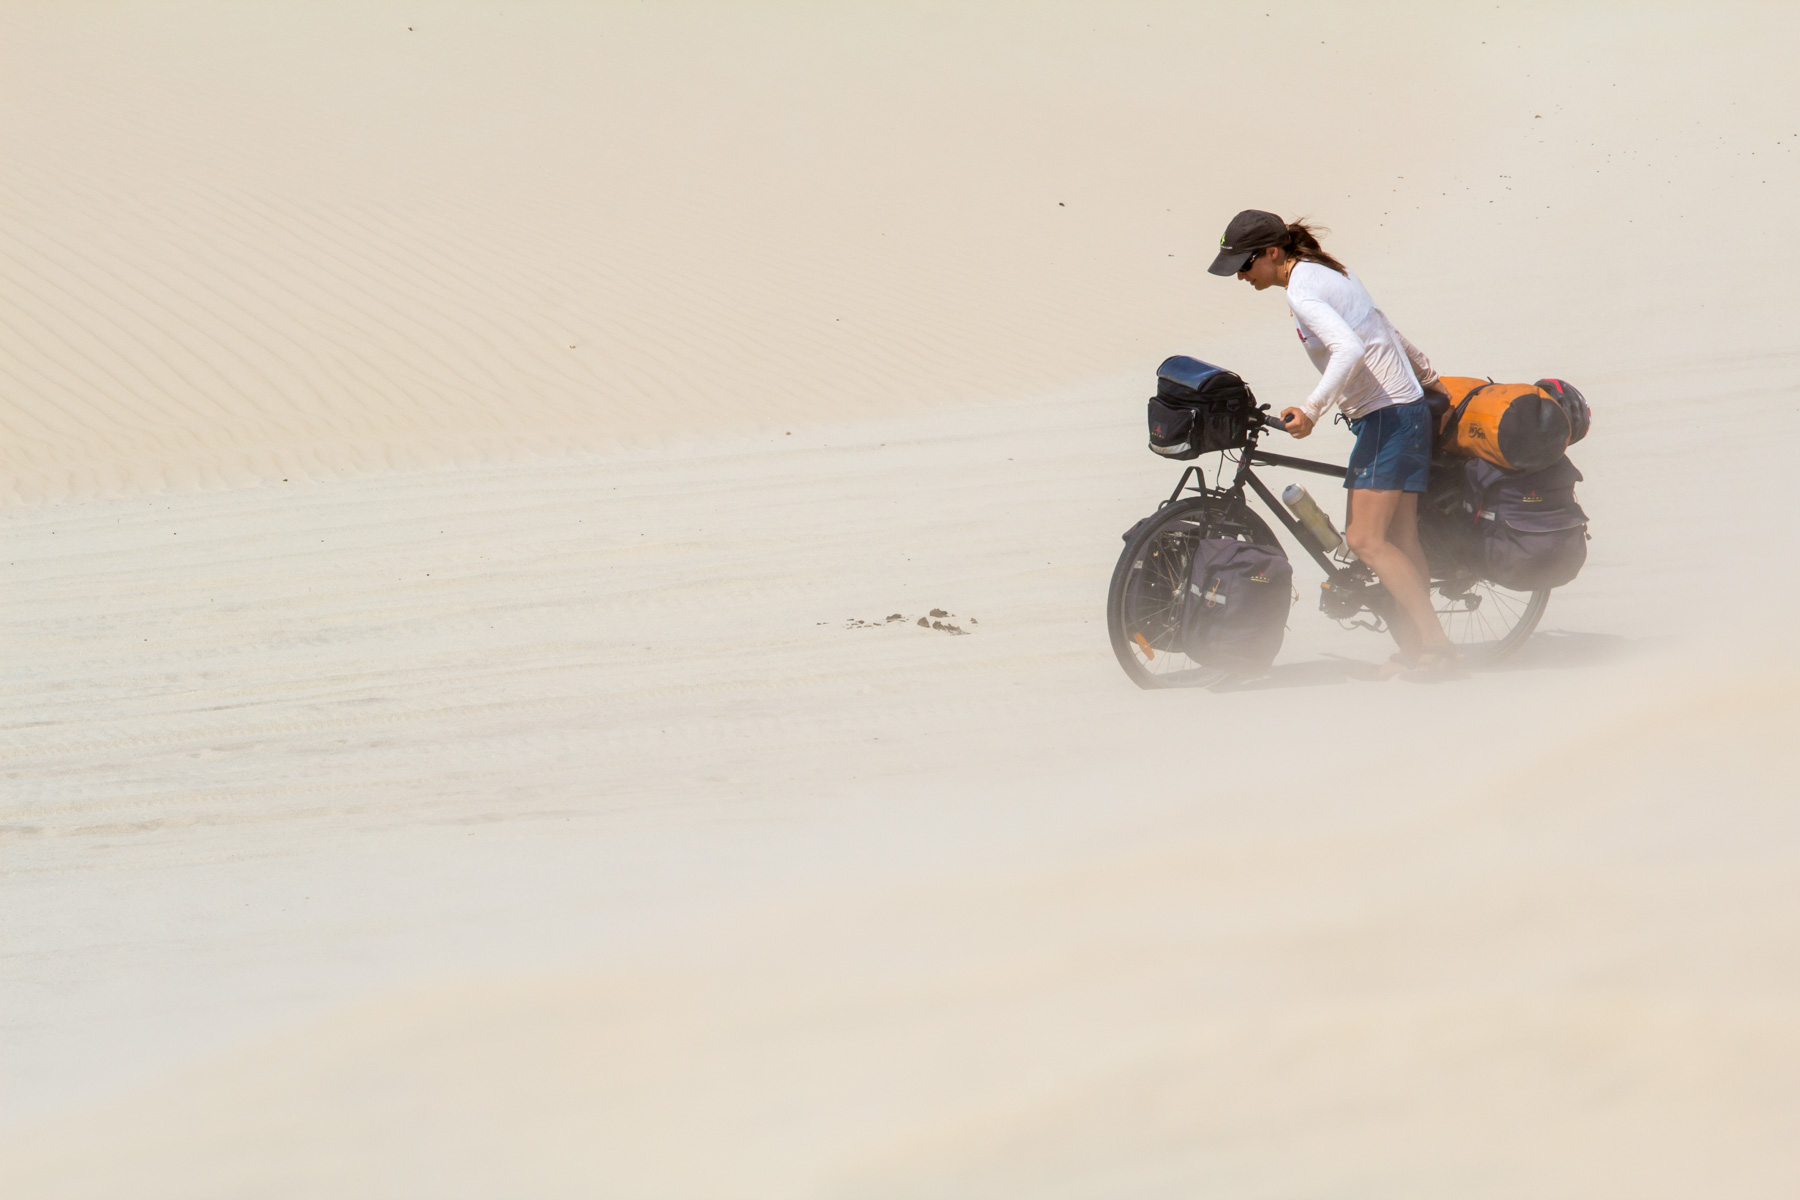 Près d’une dune, une femme dans la trentaine pousse un vélo chargé dans le sable.